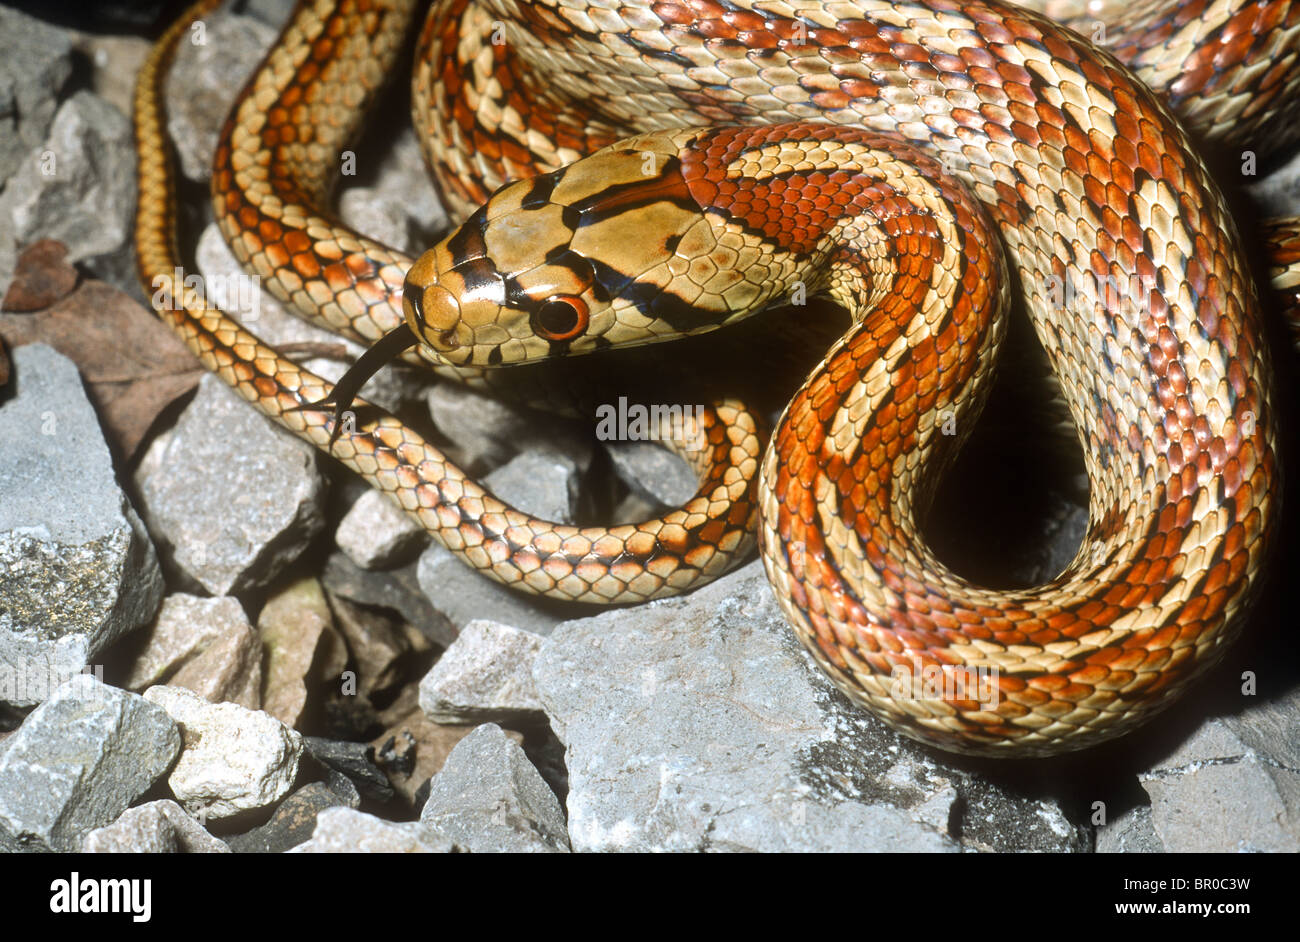 Leopard snake, Zamenis situla, Striped form Stock Photo